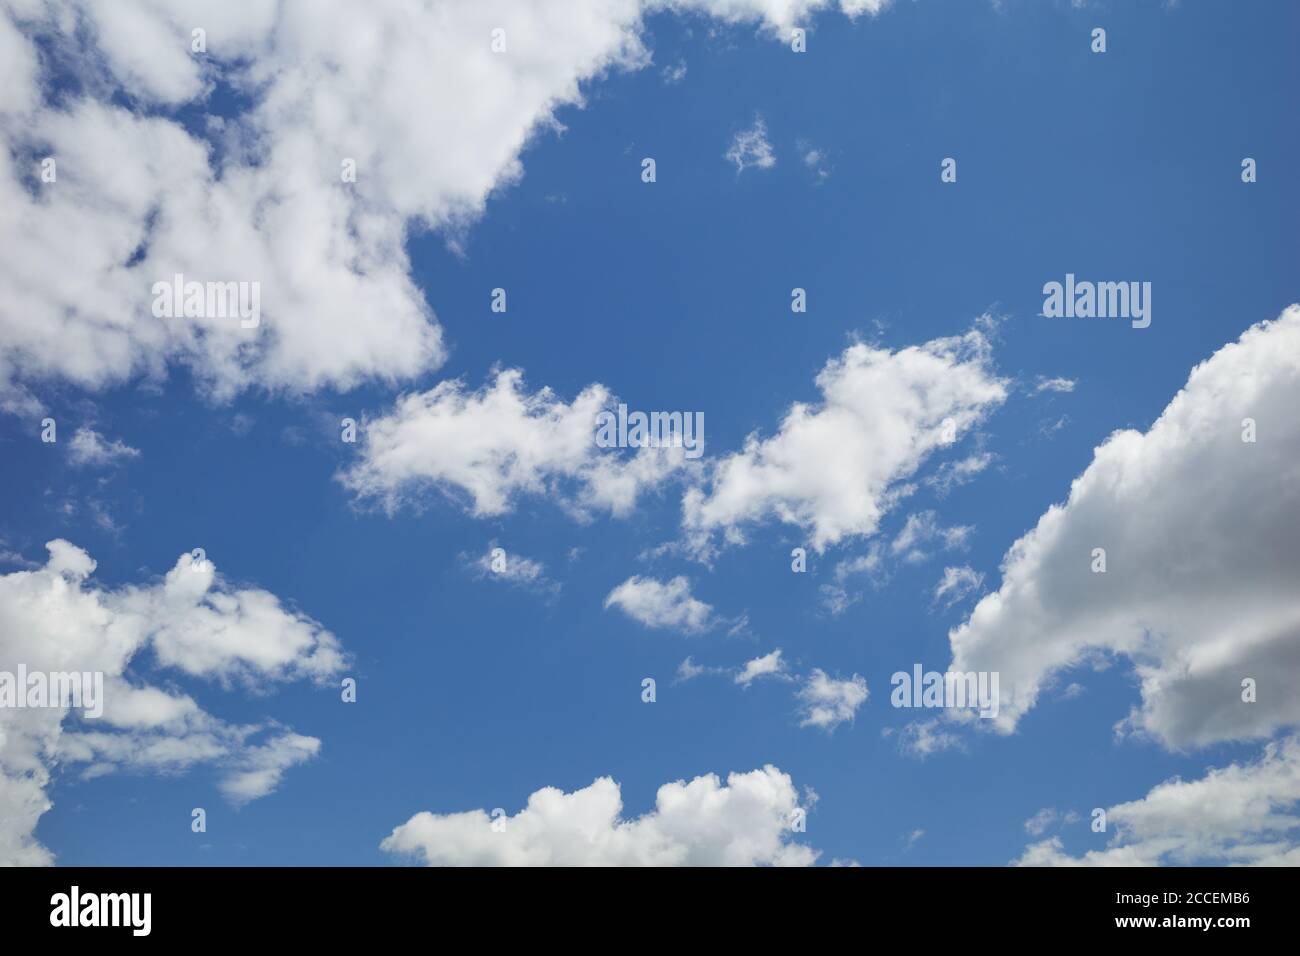 Baumwollartige Wolken am blauen Himmel. Entzückende Cumuli-Wolken fliegen in dem erstaunlichen blauen Himmel. Hintergrund für Vorhersage und Meteorologie Illustration Stockfoto